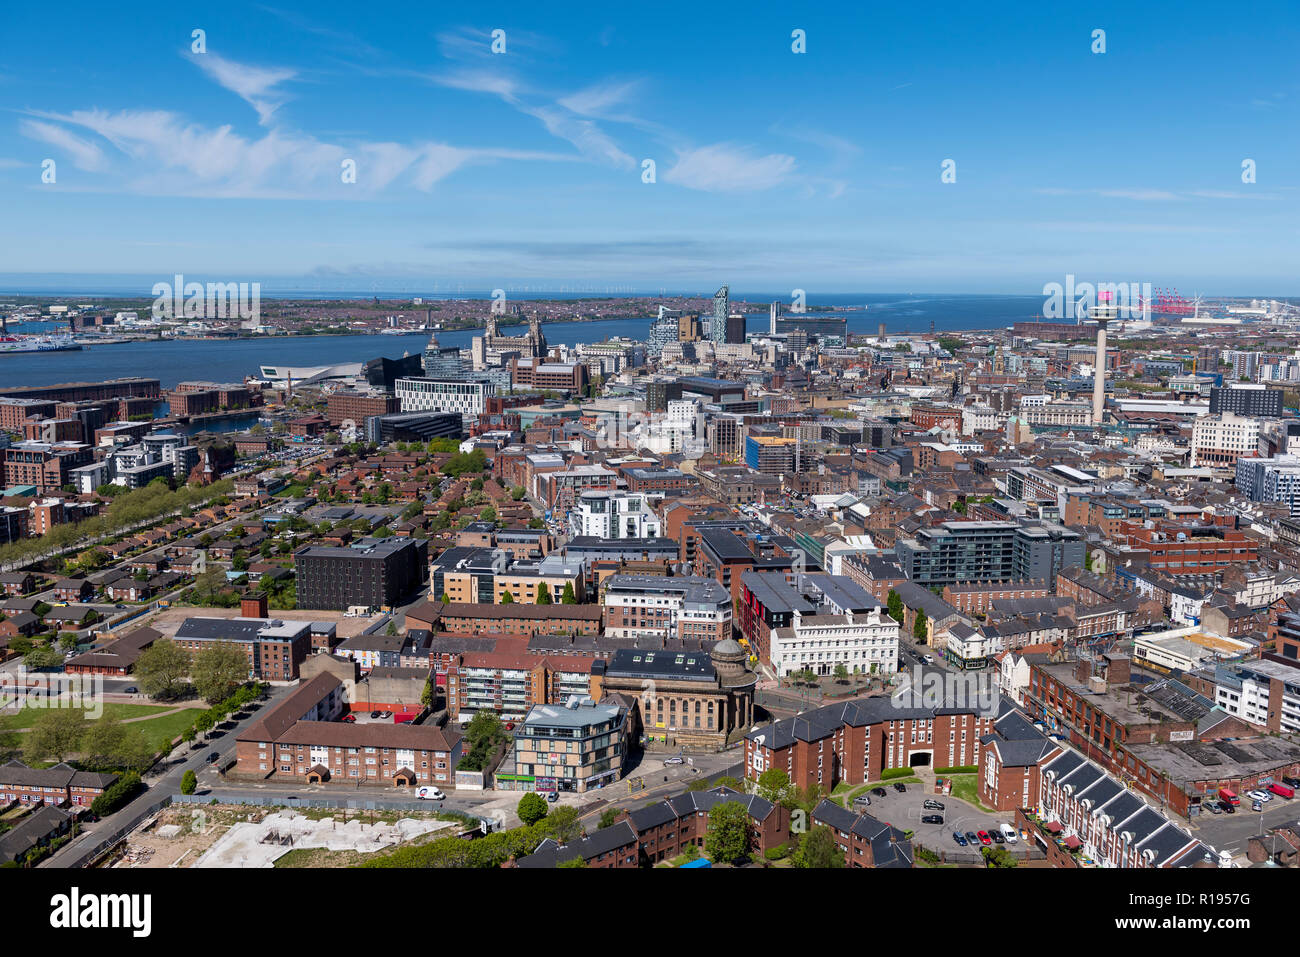 Blick auf das Stadtzentrum von Liverpool skyline Blick auf den Fluss Mersey, Wirral, und Crosby in der Ferne Stockfoto